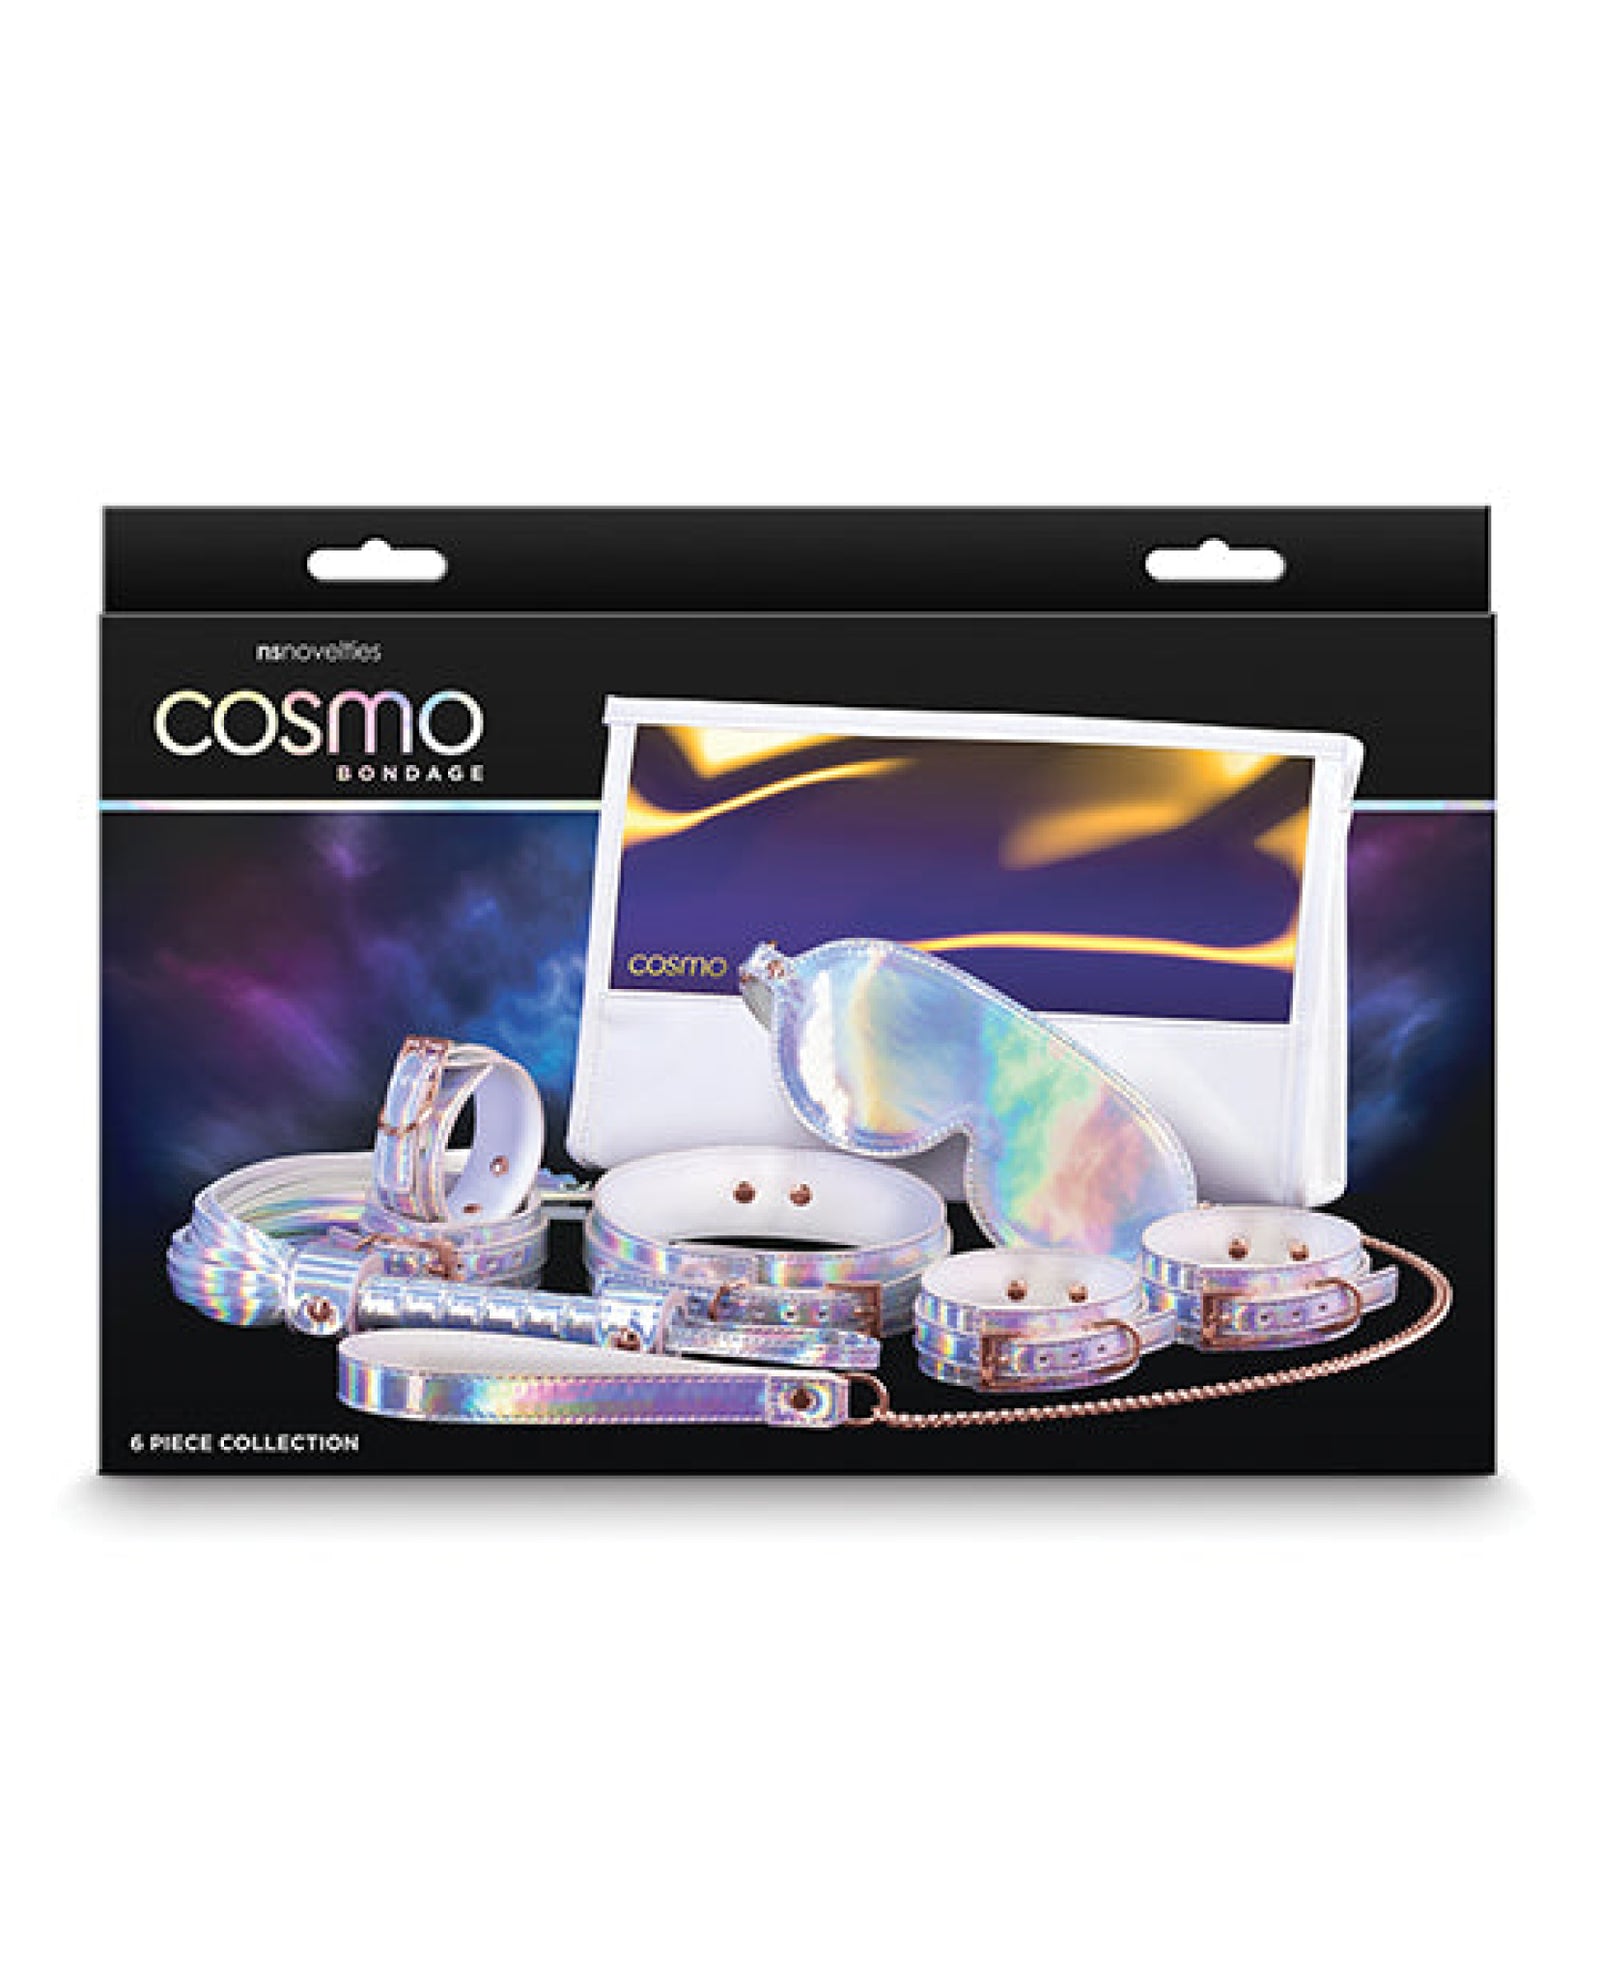 Cosmo Bondage 6 Pc Kit - Rainbow Cosmo